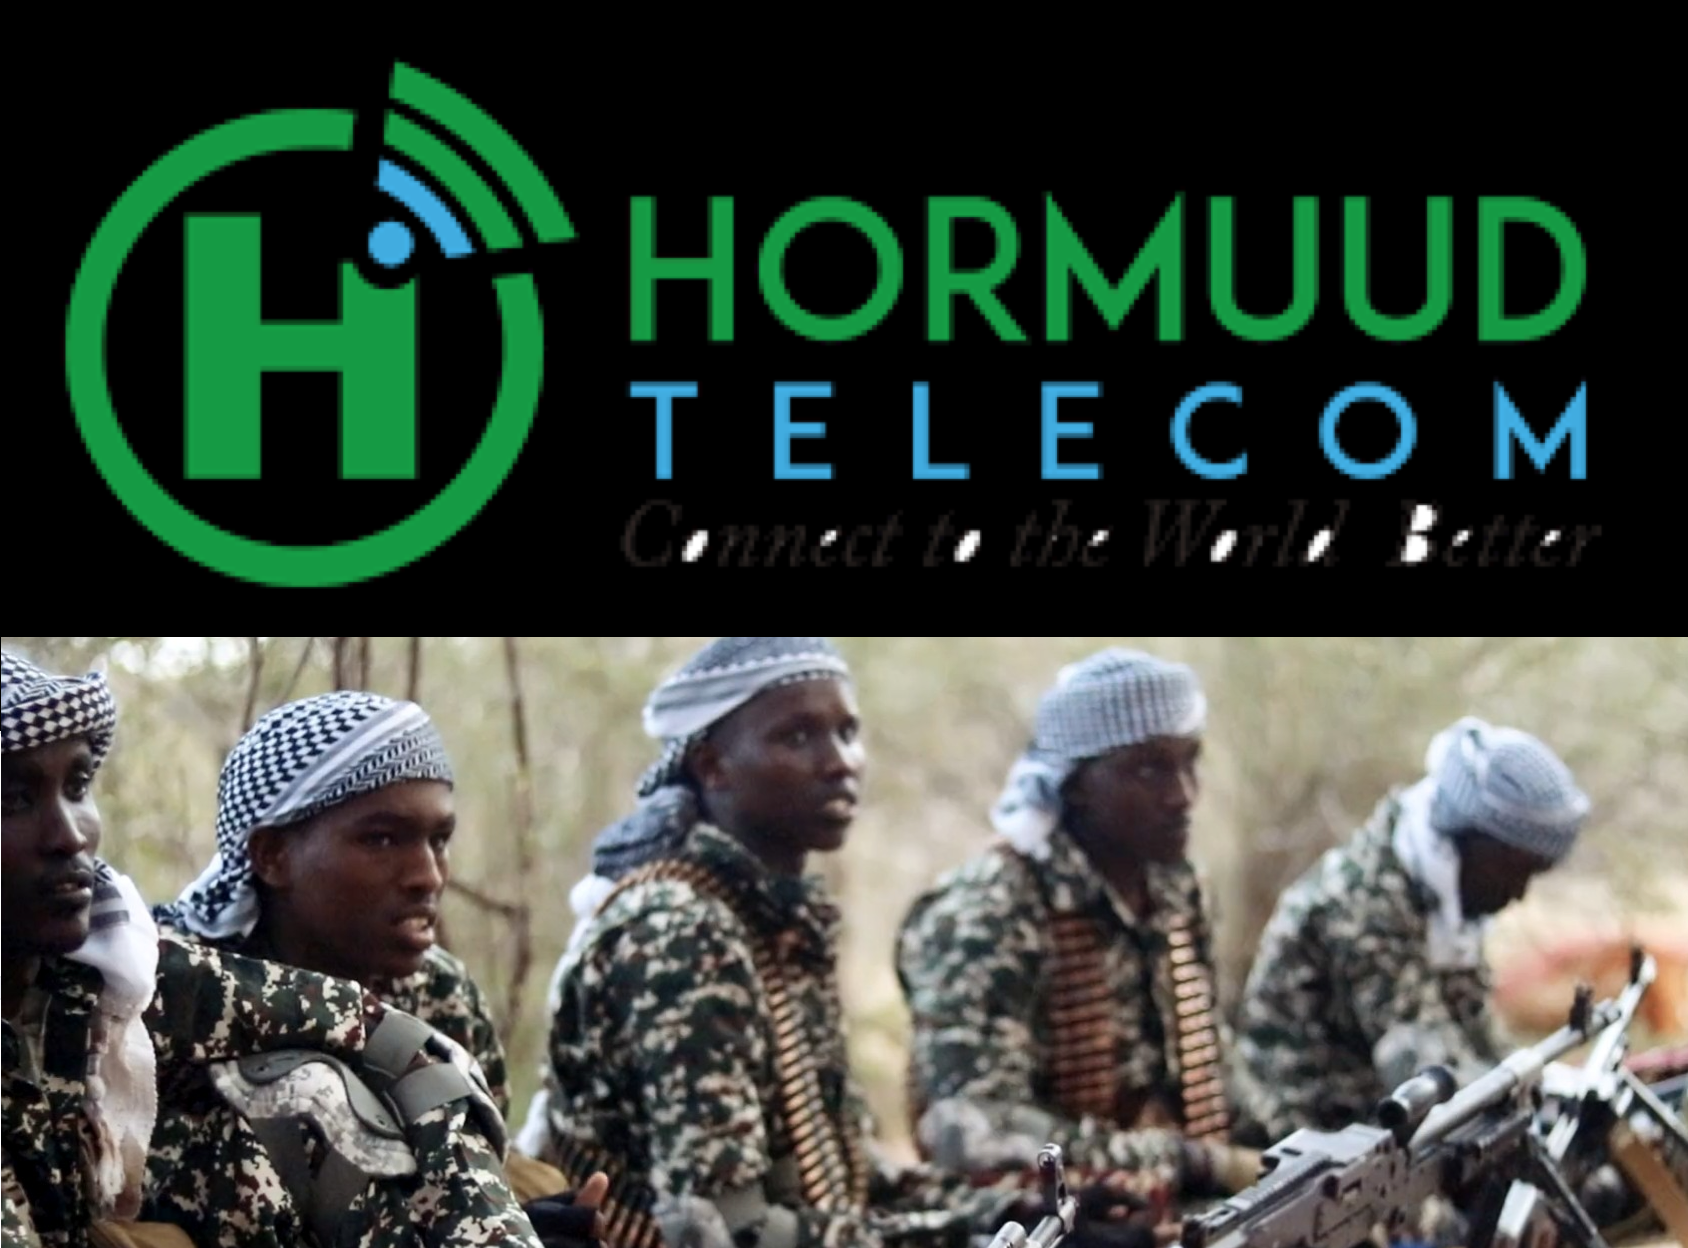 Hormuud Telecom, Taaj Express, Salaam Bank and Dahabshiil Money Transfer directly pay taxes to Al-Shabaab.